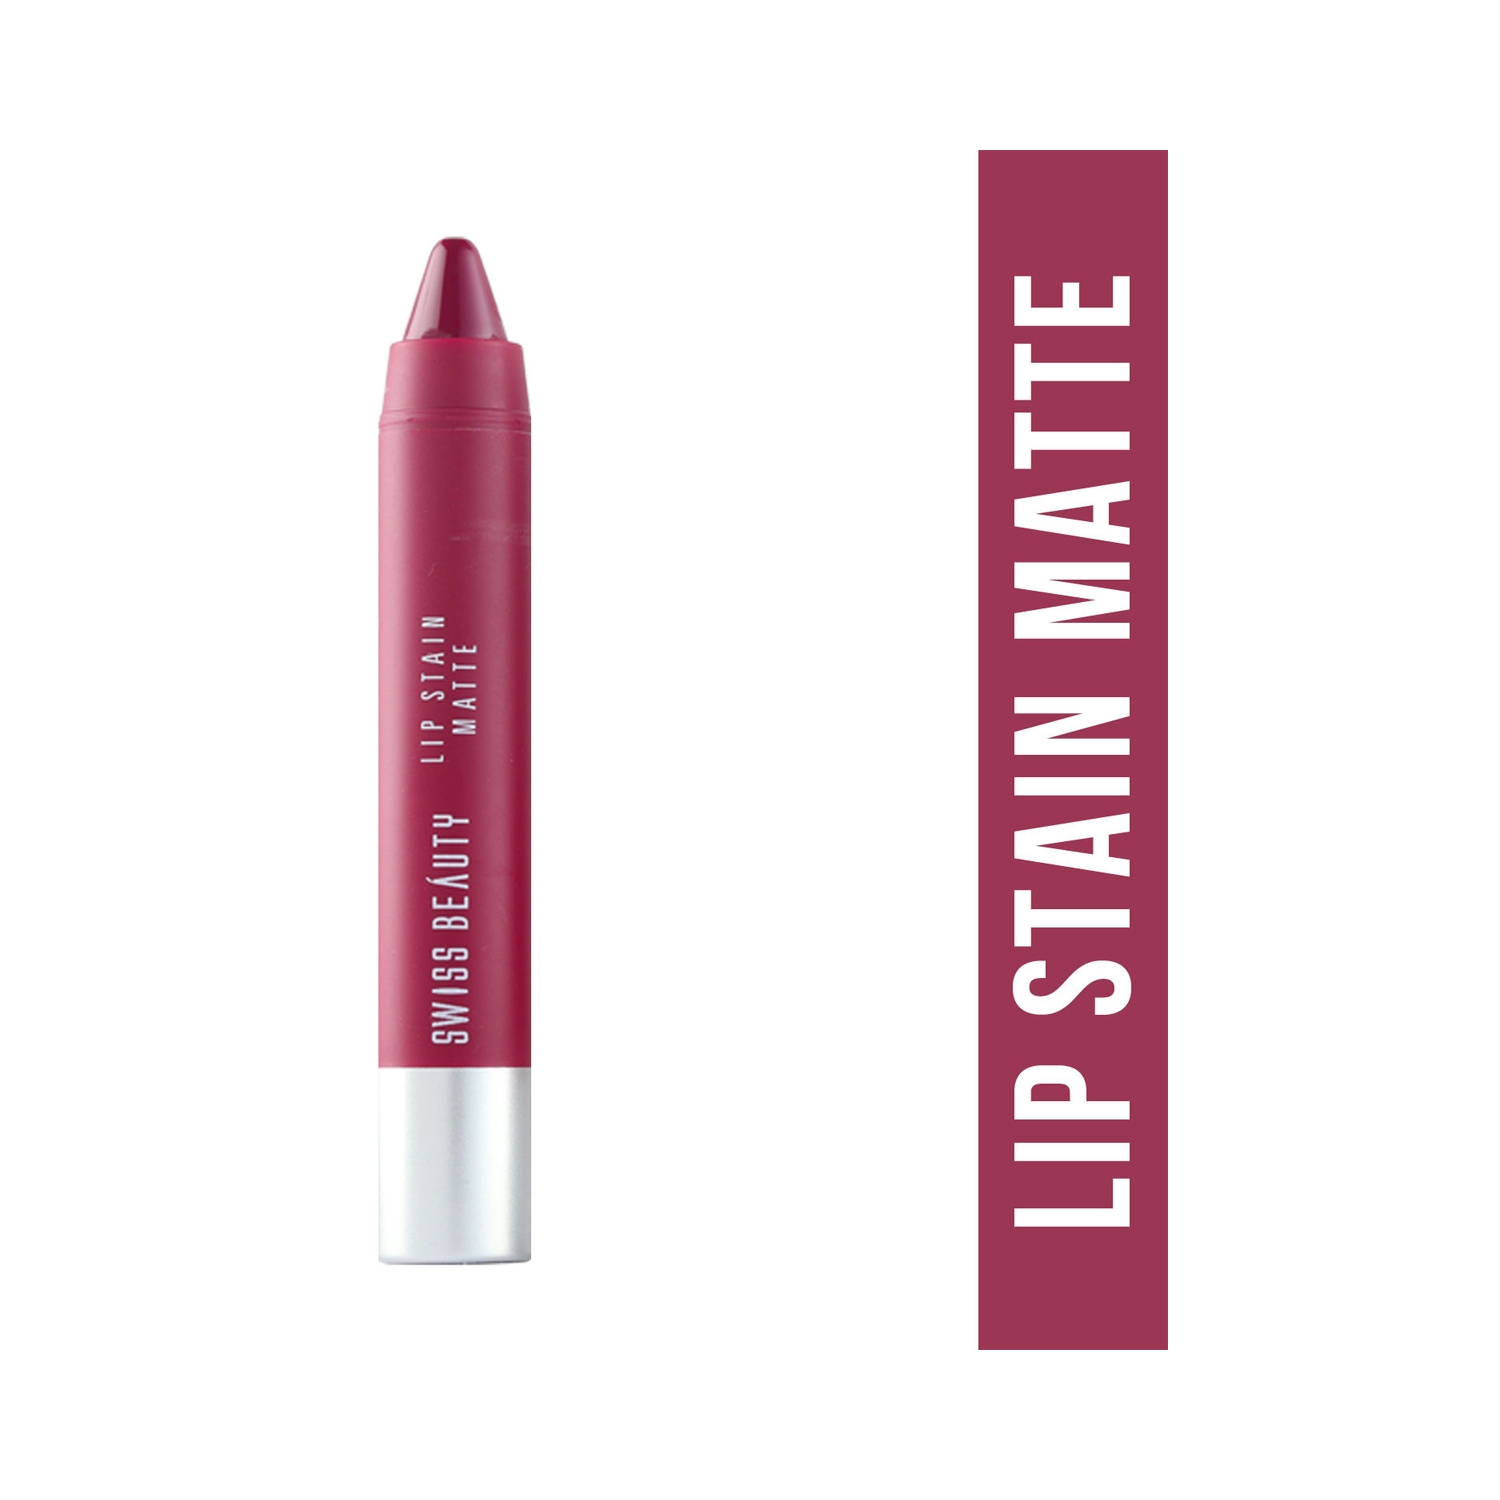 Swiss Beauty | Swiss Beauty Lip Stain Matte Lipstick - Fuchsia Pink (3.4g)